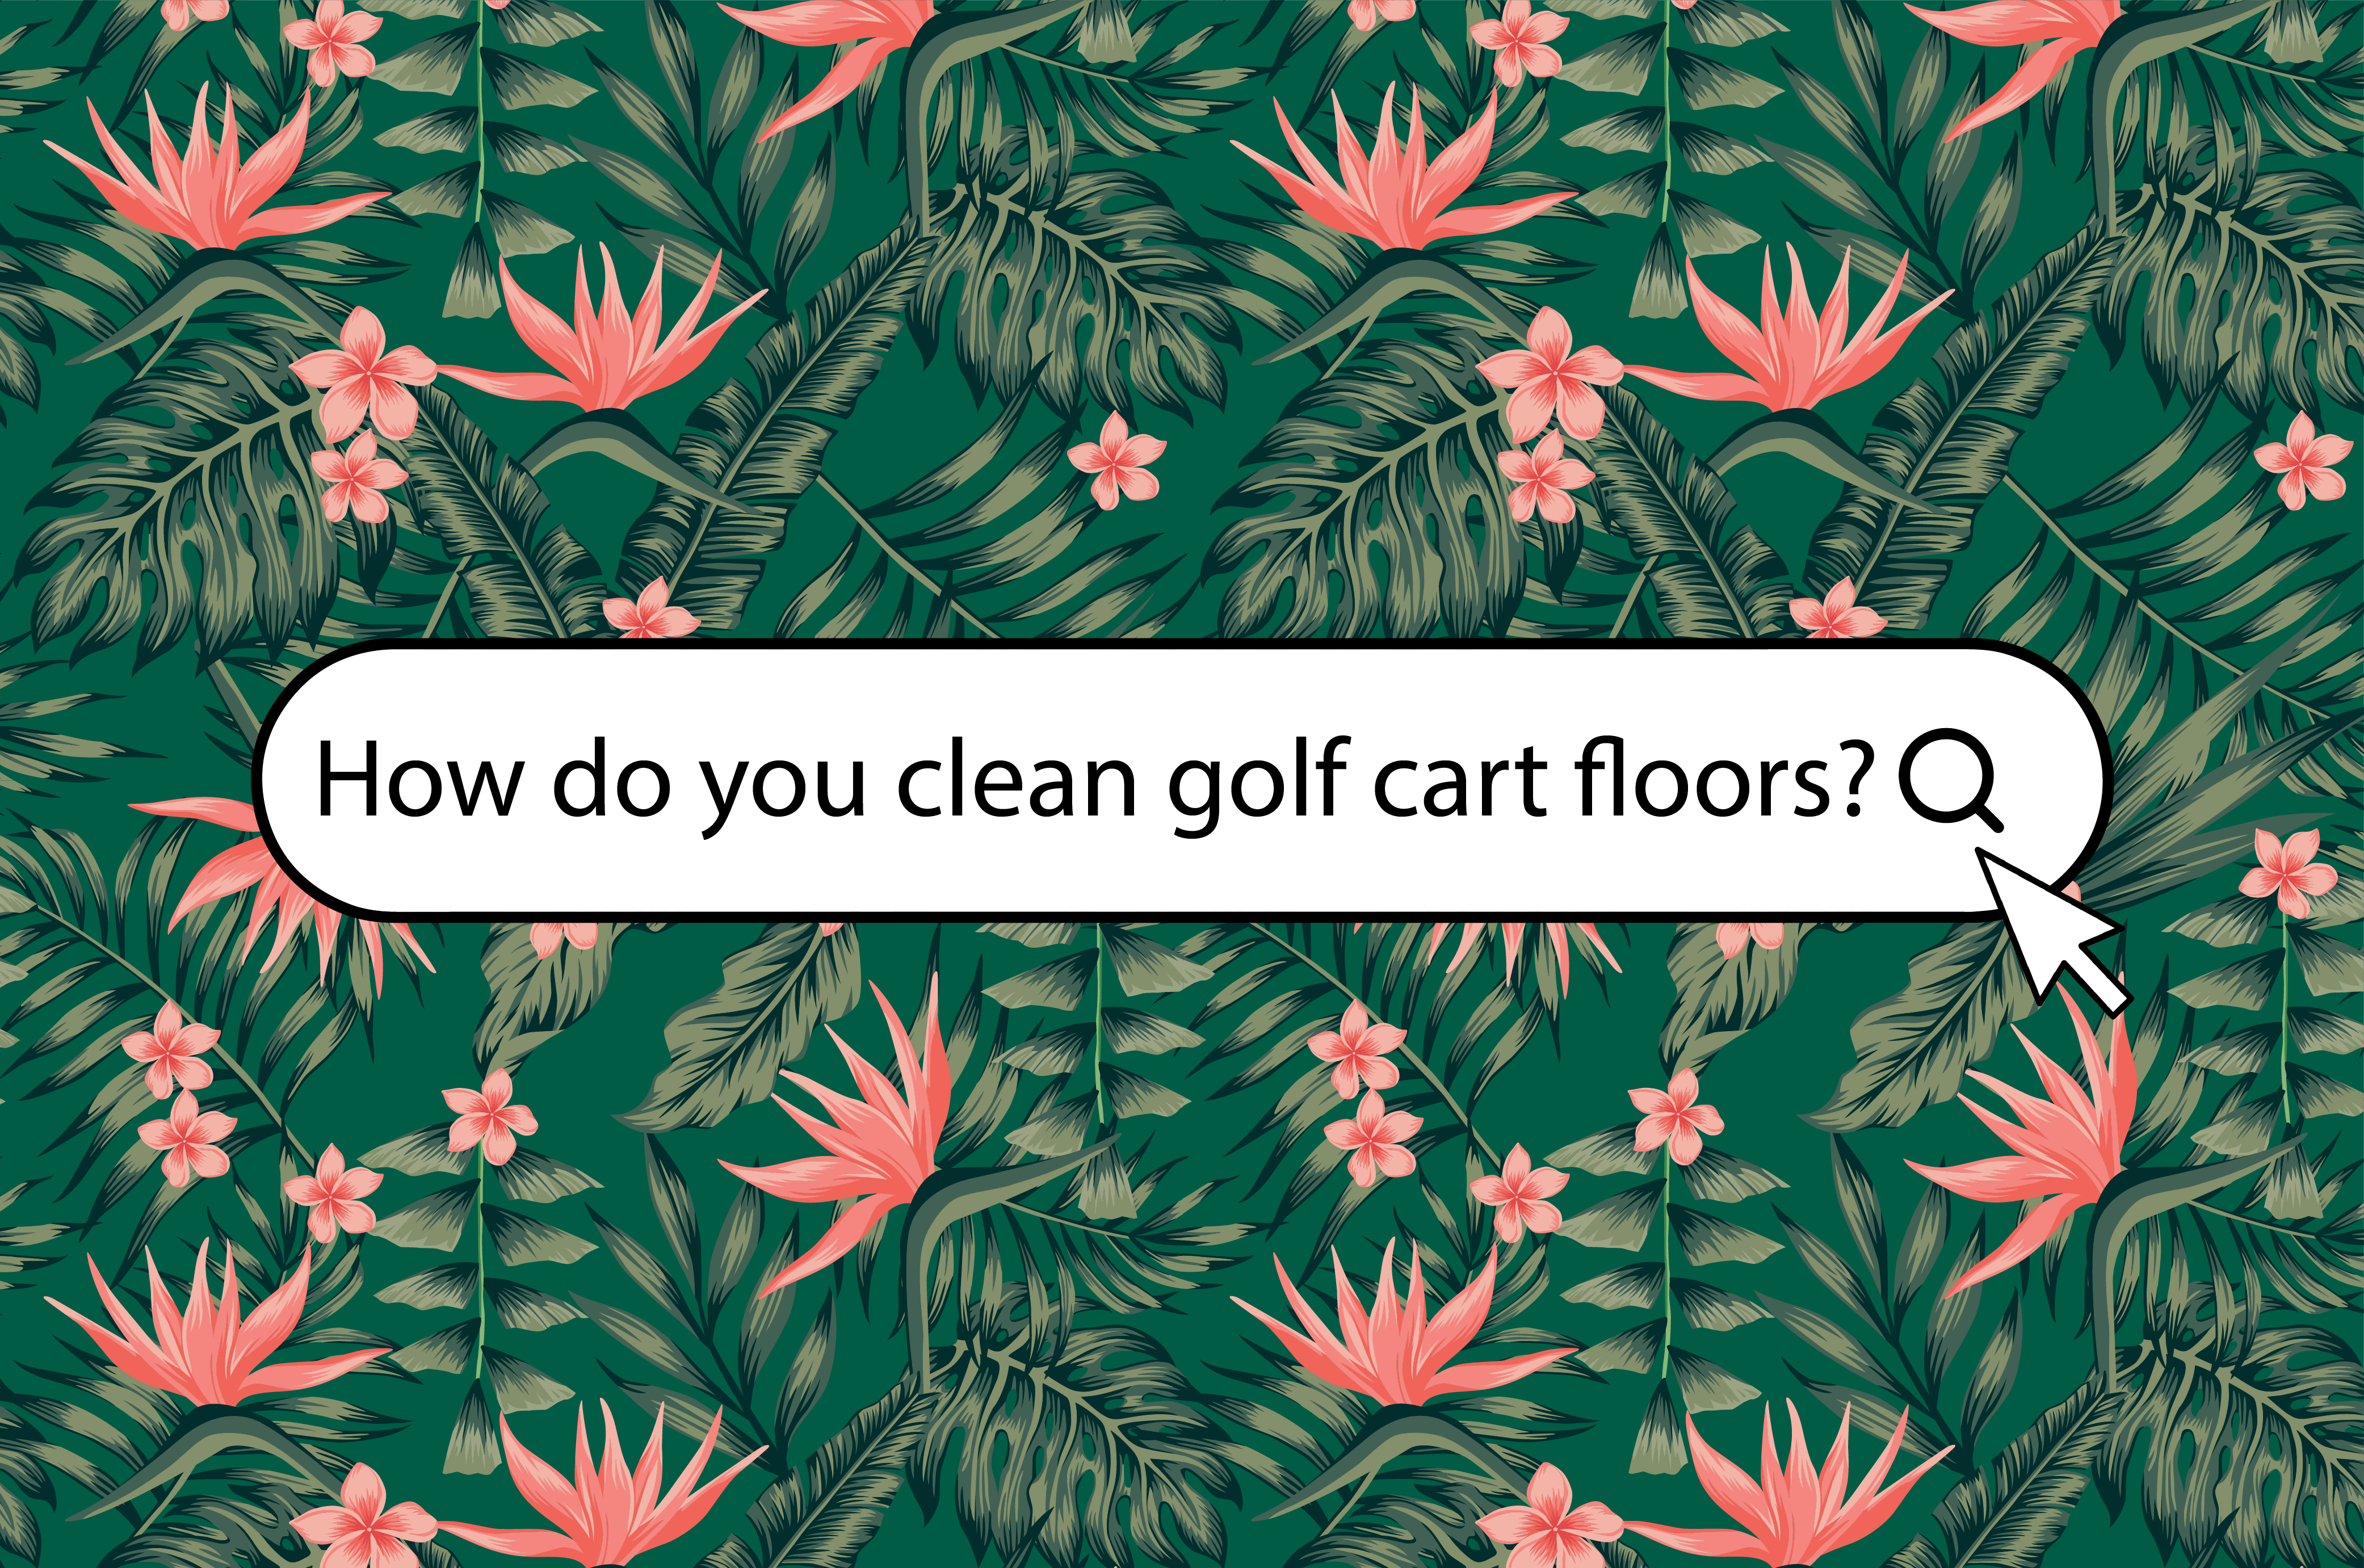 How do you clean golf cart floors?